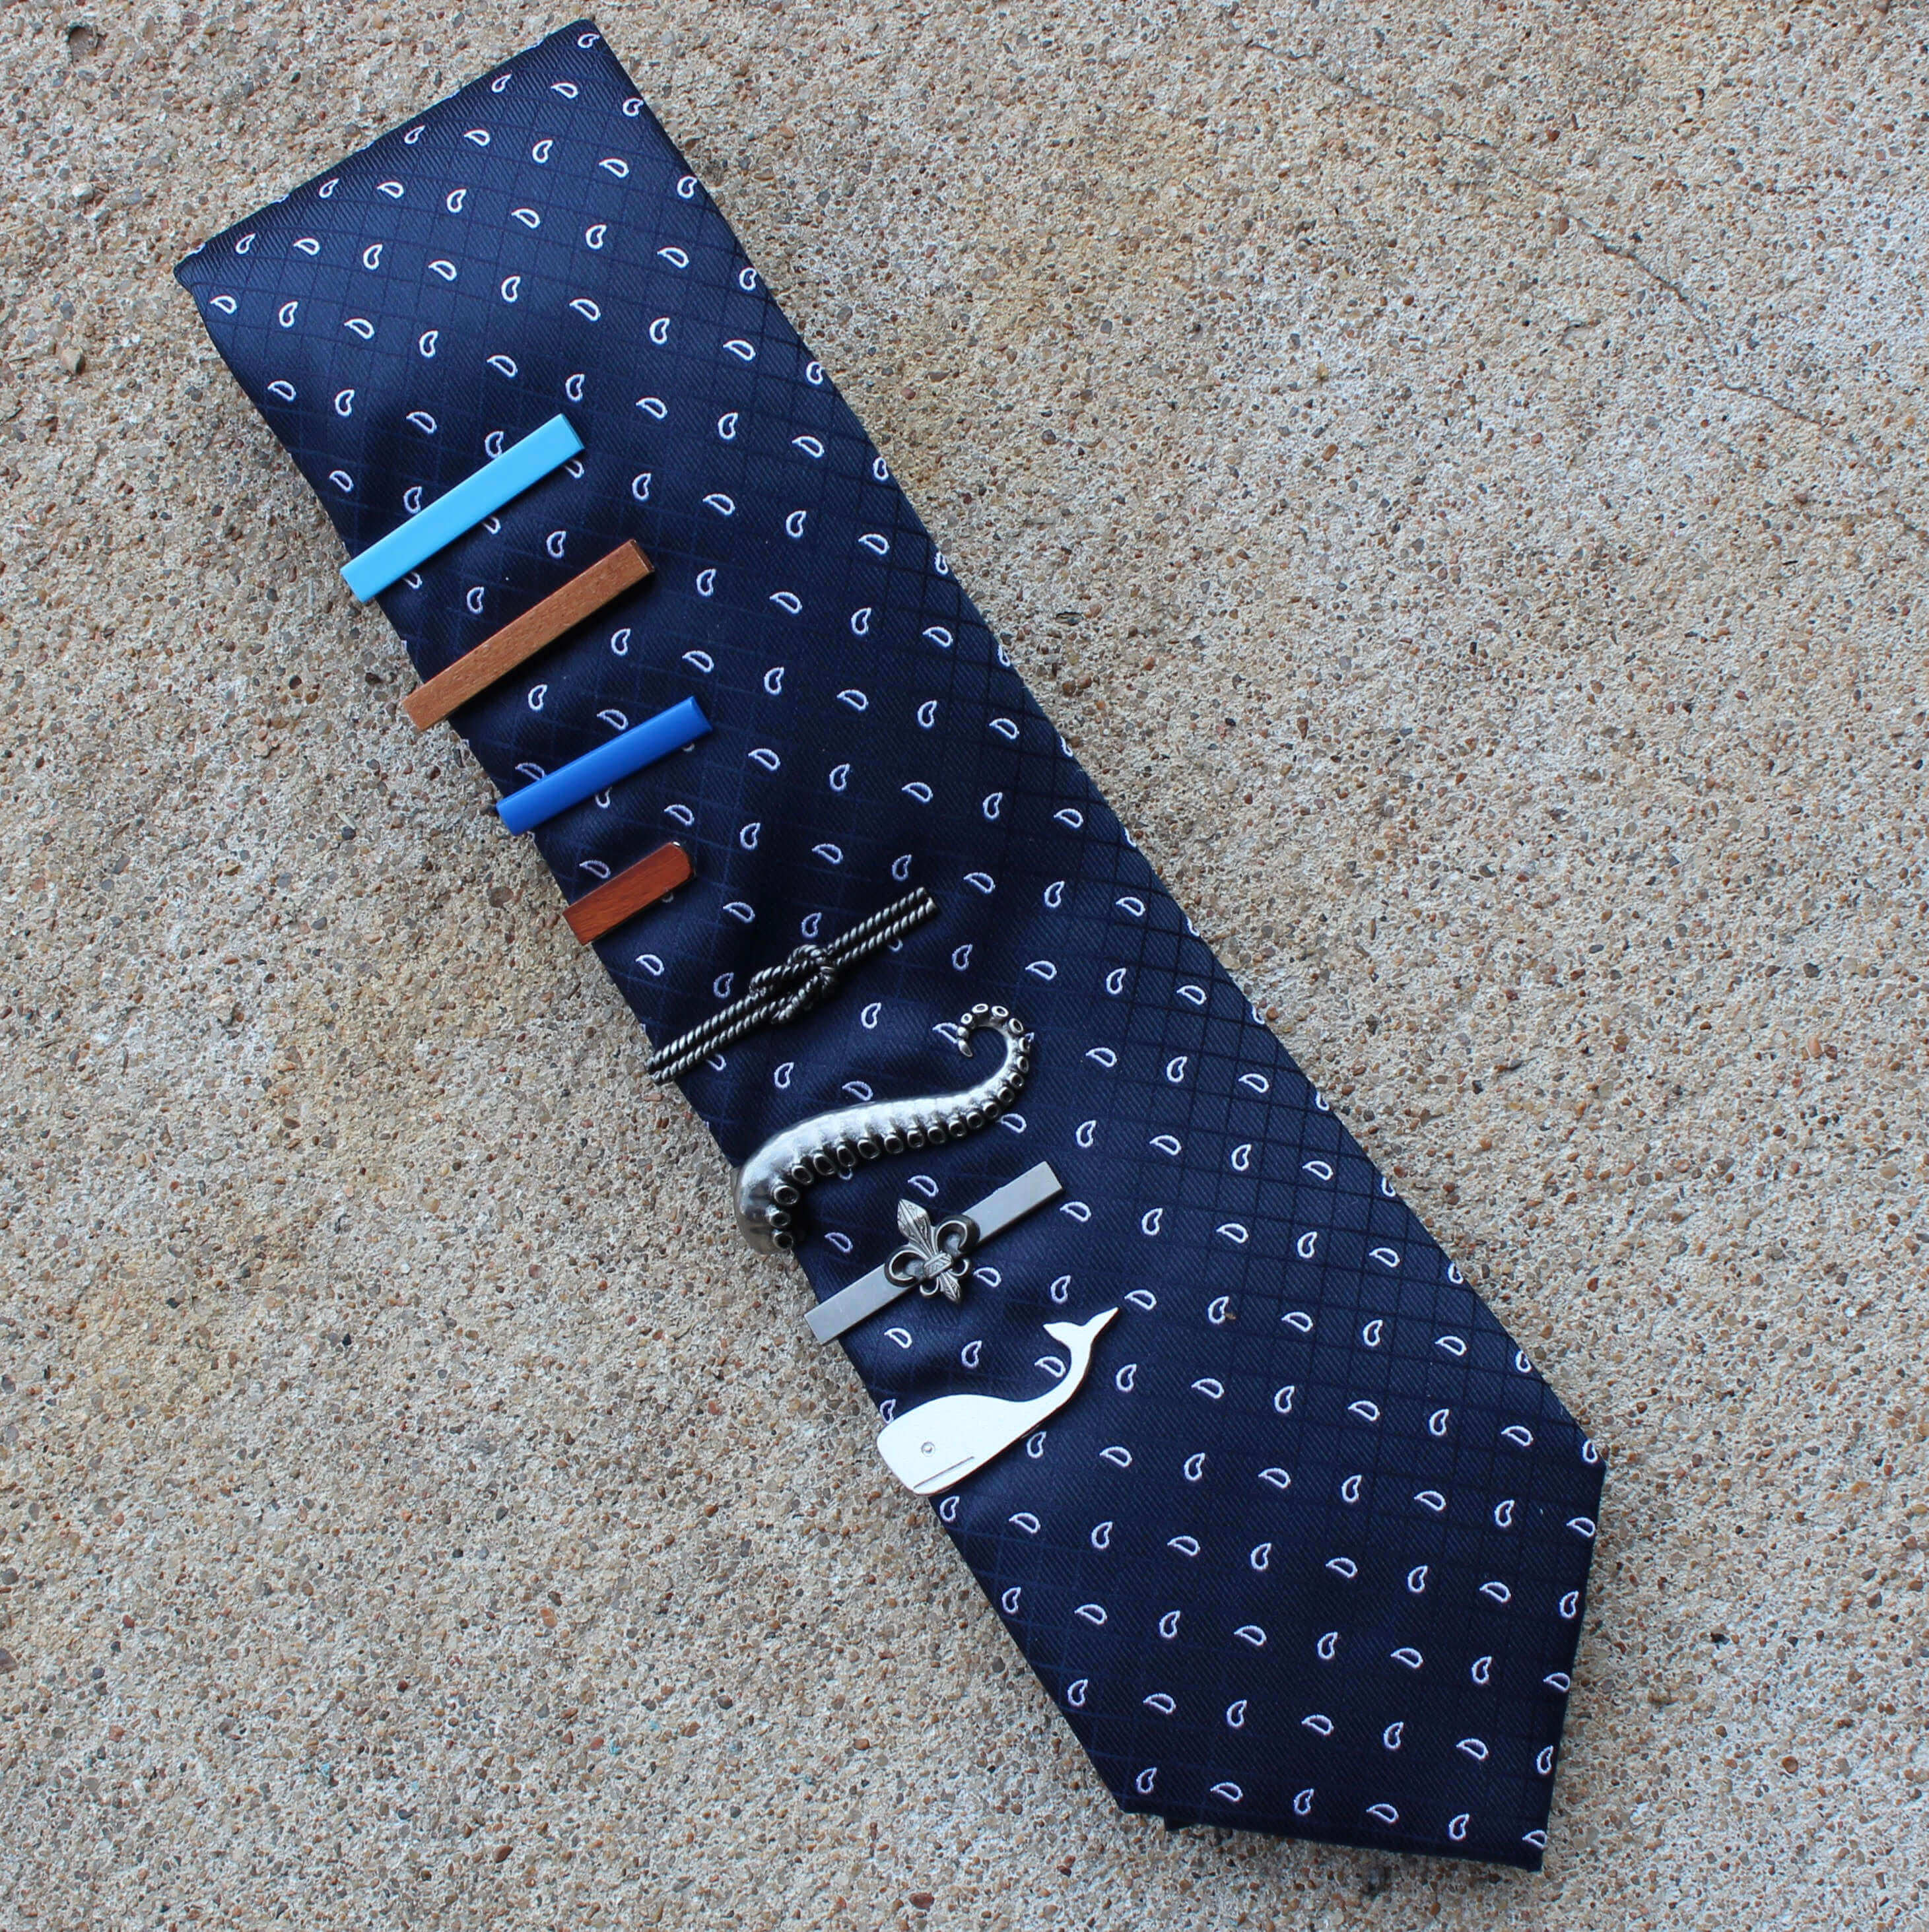 Leopard Unique Tie Clasps & Tacks RooZee Tie Clip Tie Bar Tie Pin Made in Japan 